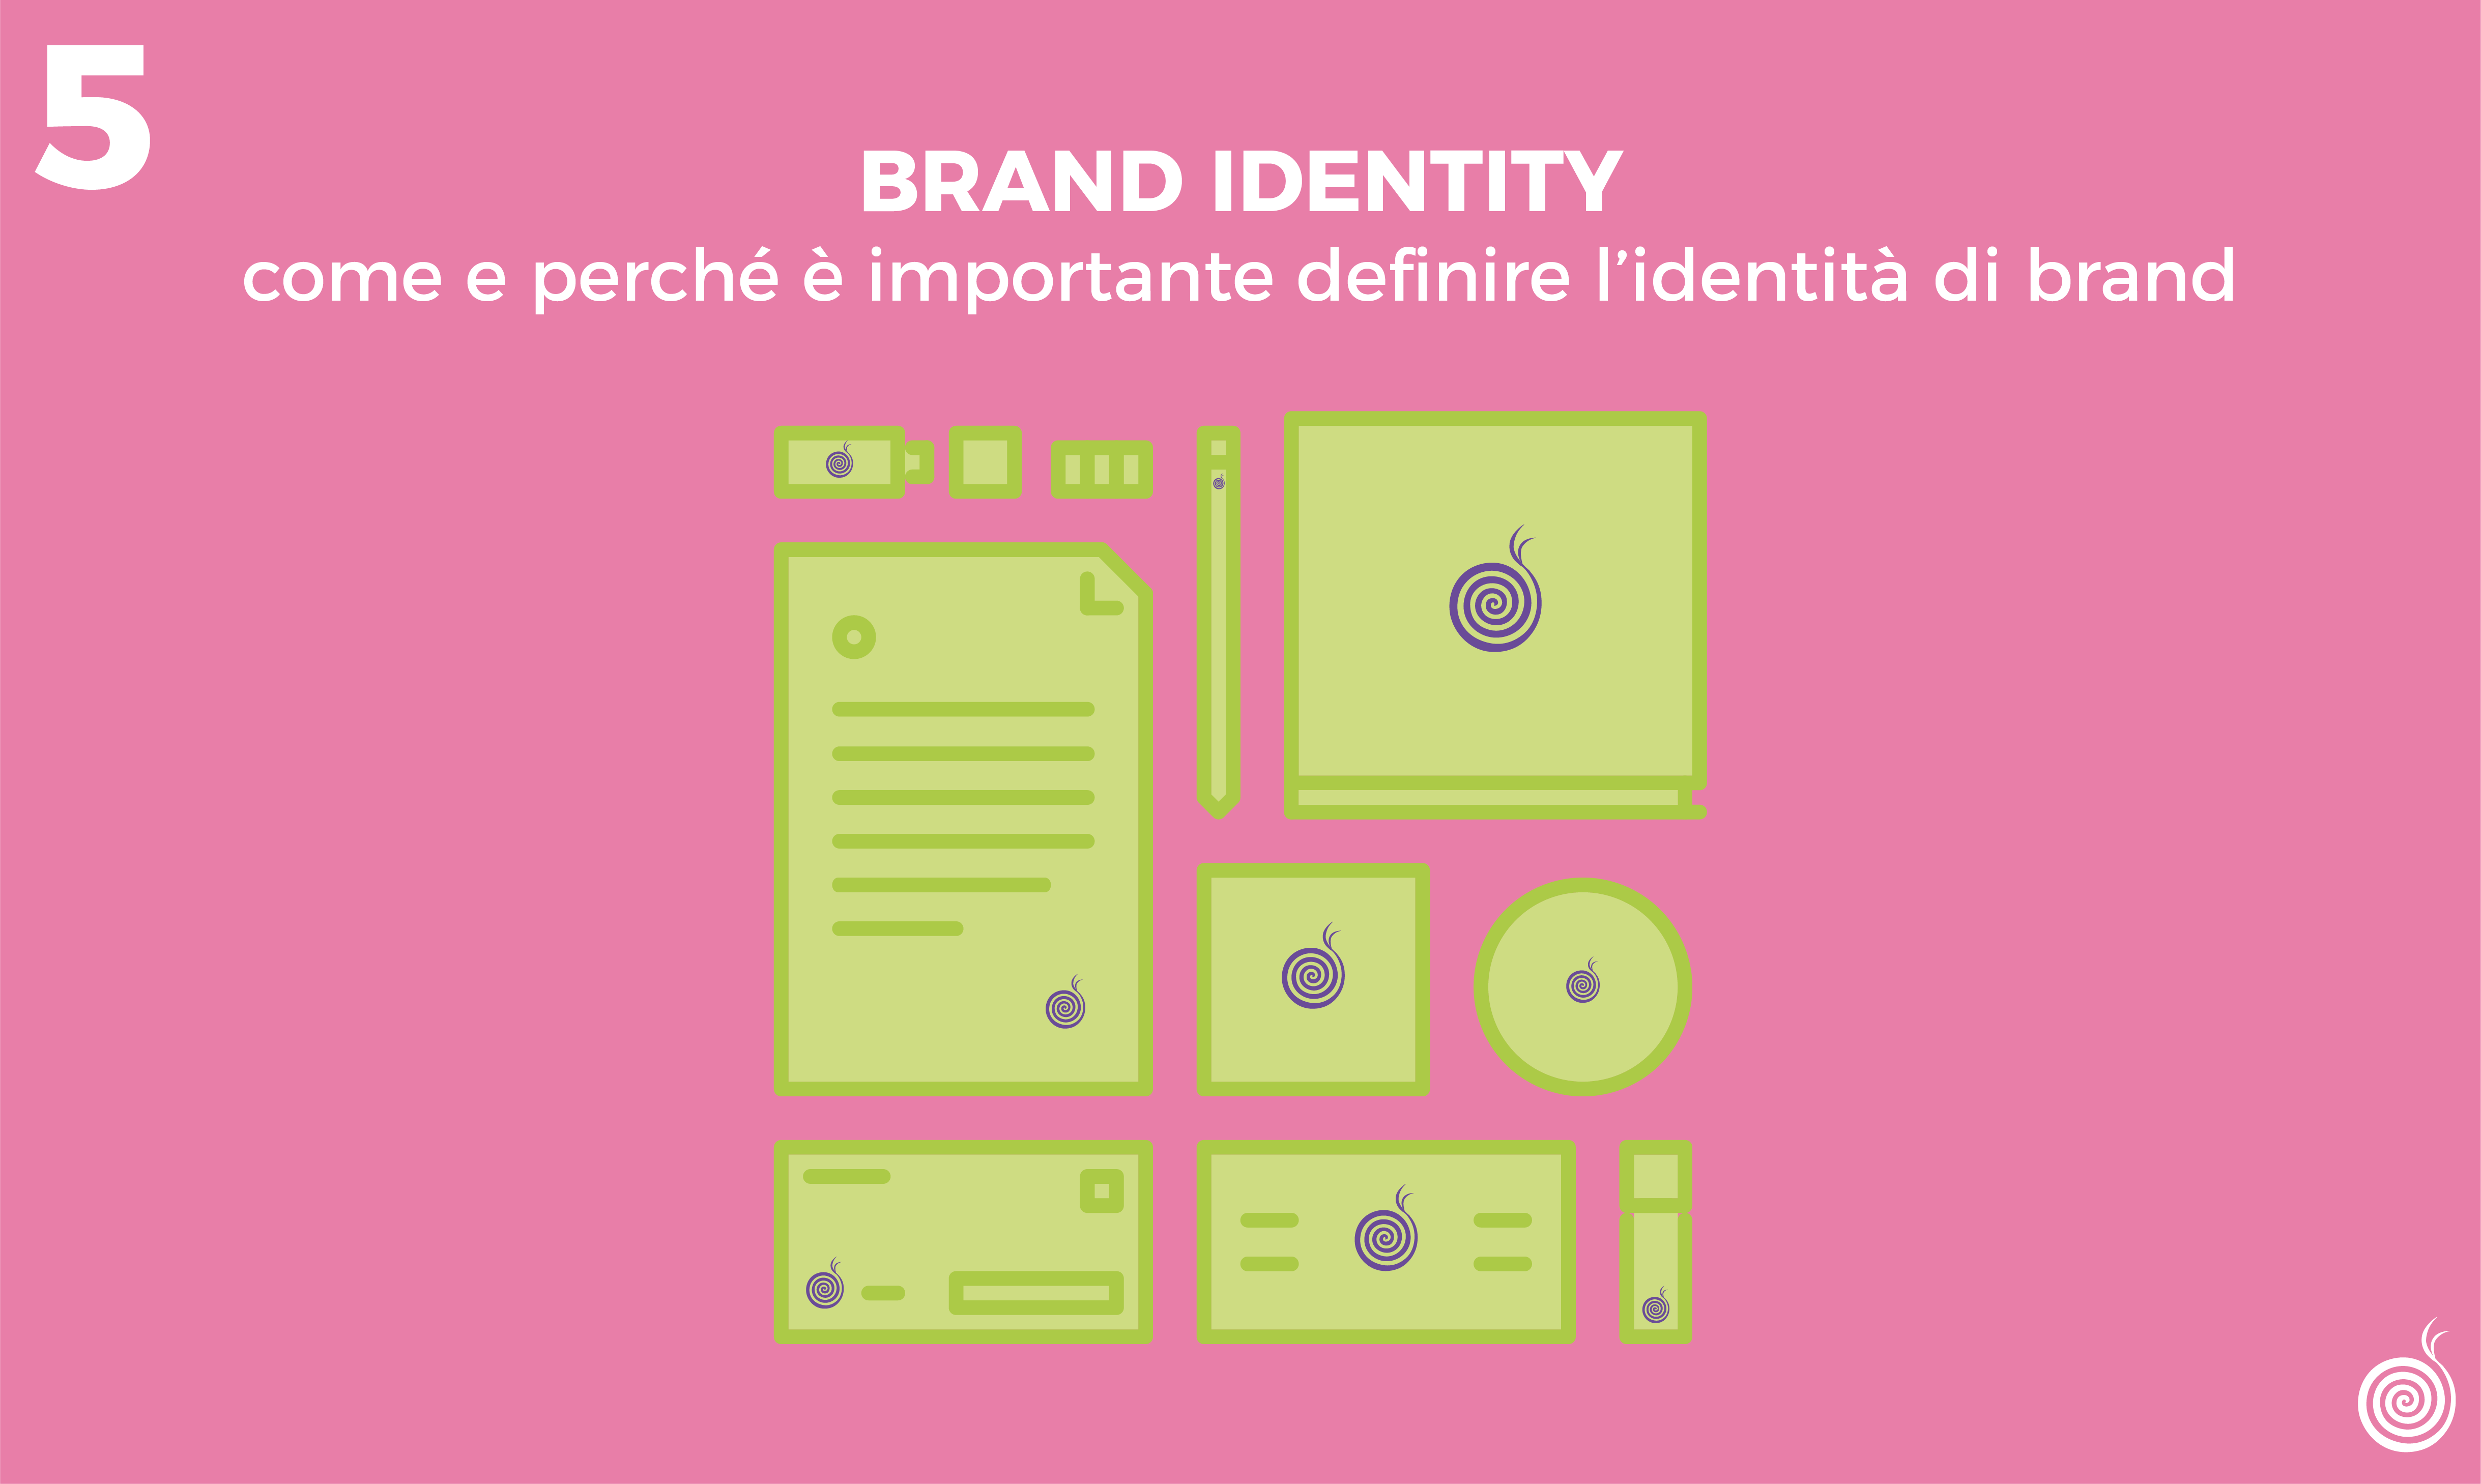 Brand identity: come e perché è importante definire l'identità di brand